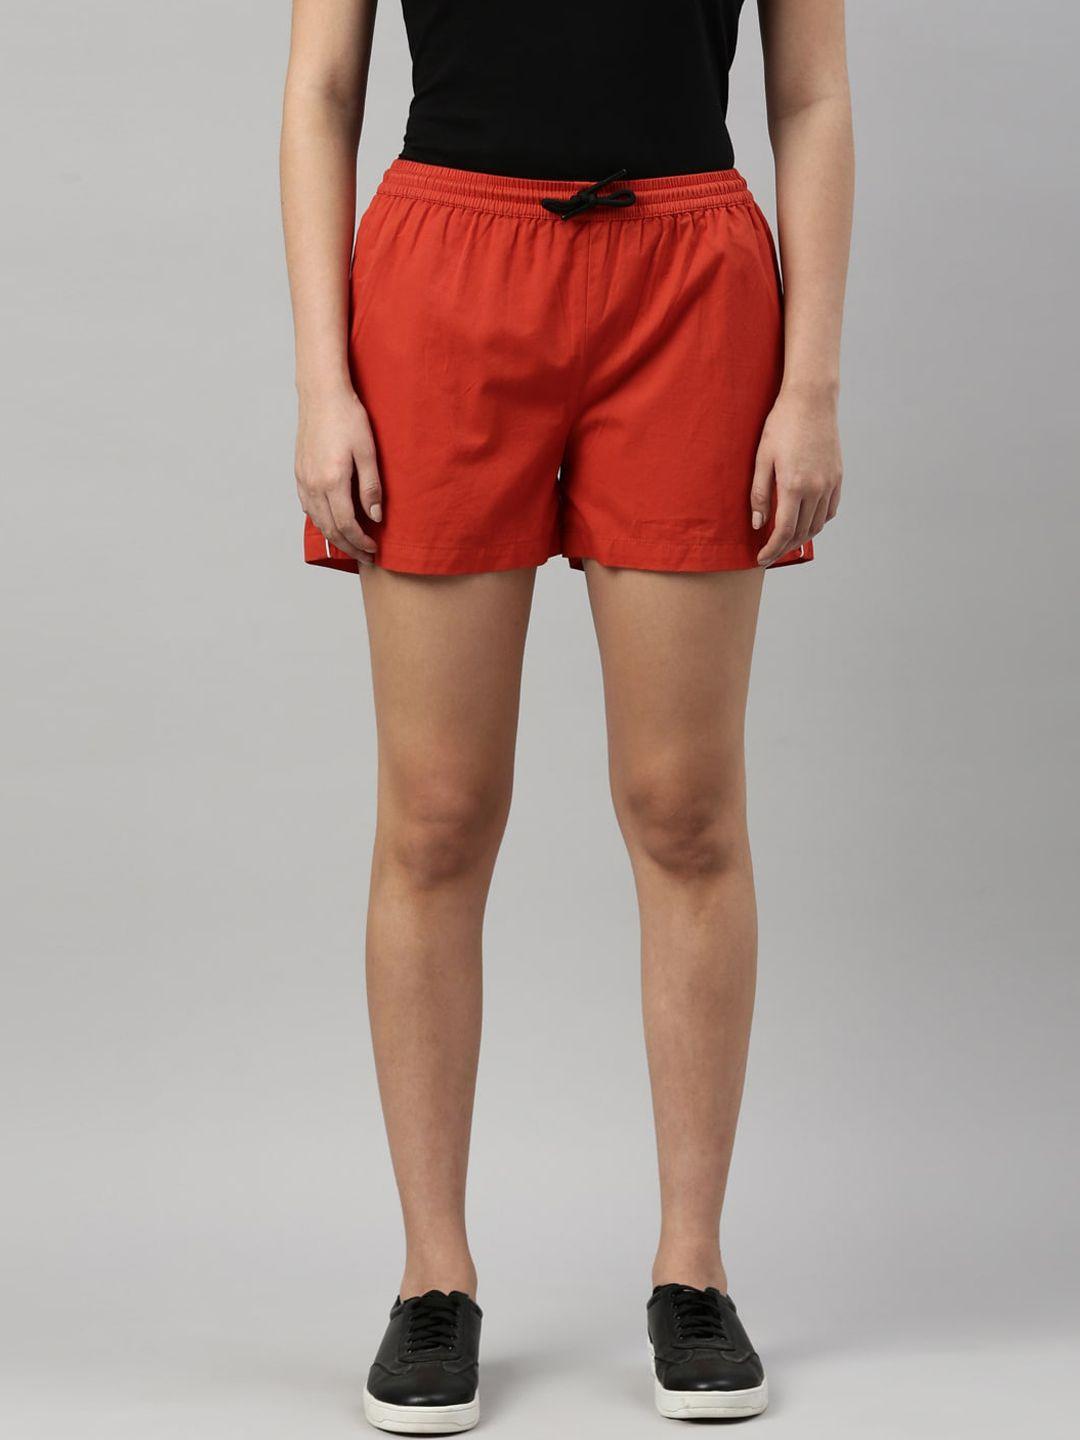 zheia women red solid shorts